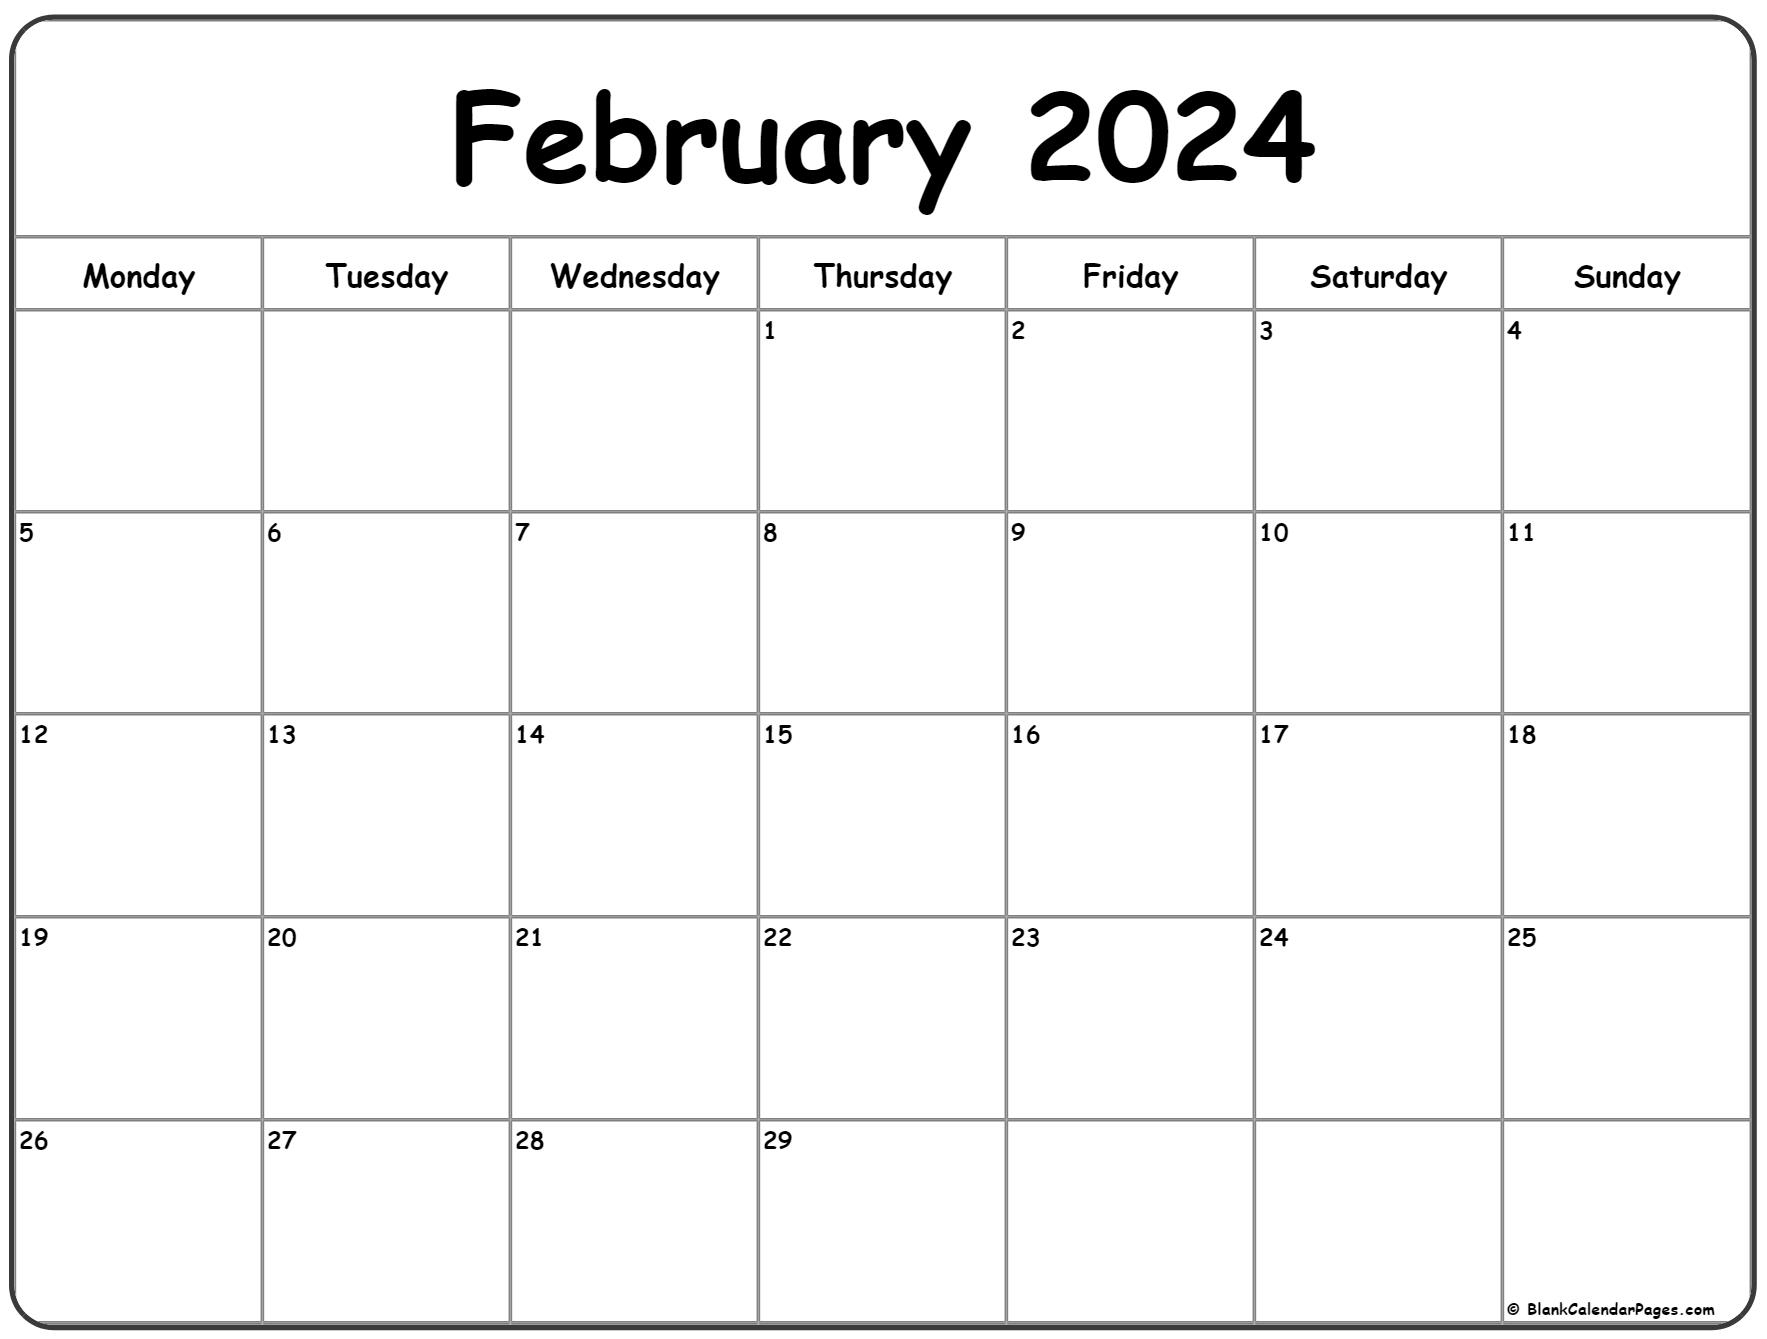 February 2024 Monday Calendar | Monday To Sunday for 2024 Calendar February Printable